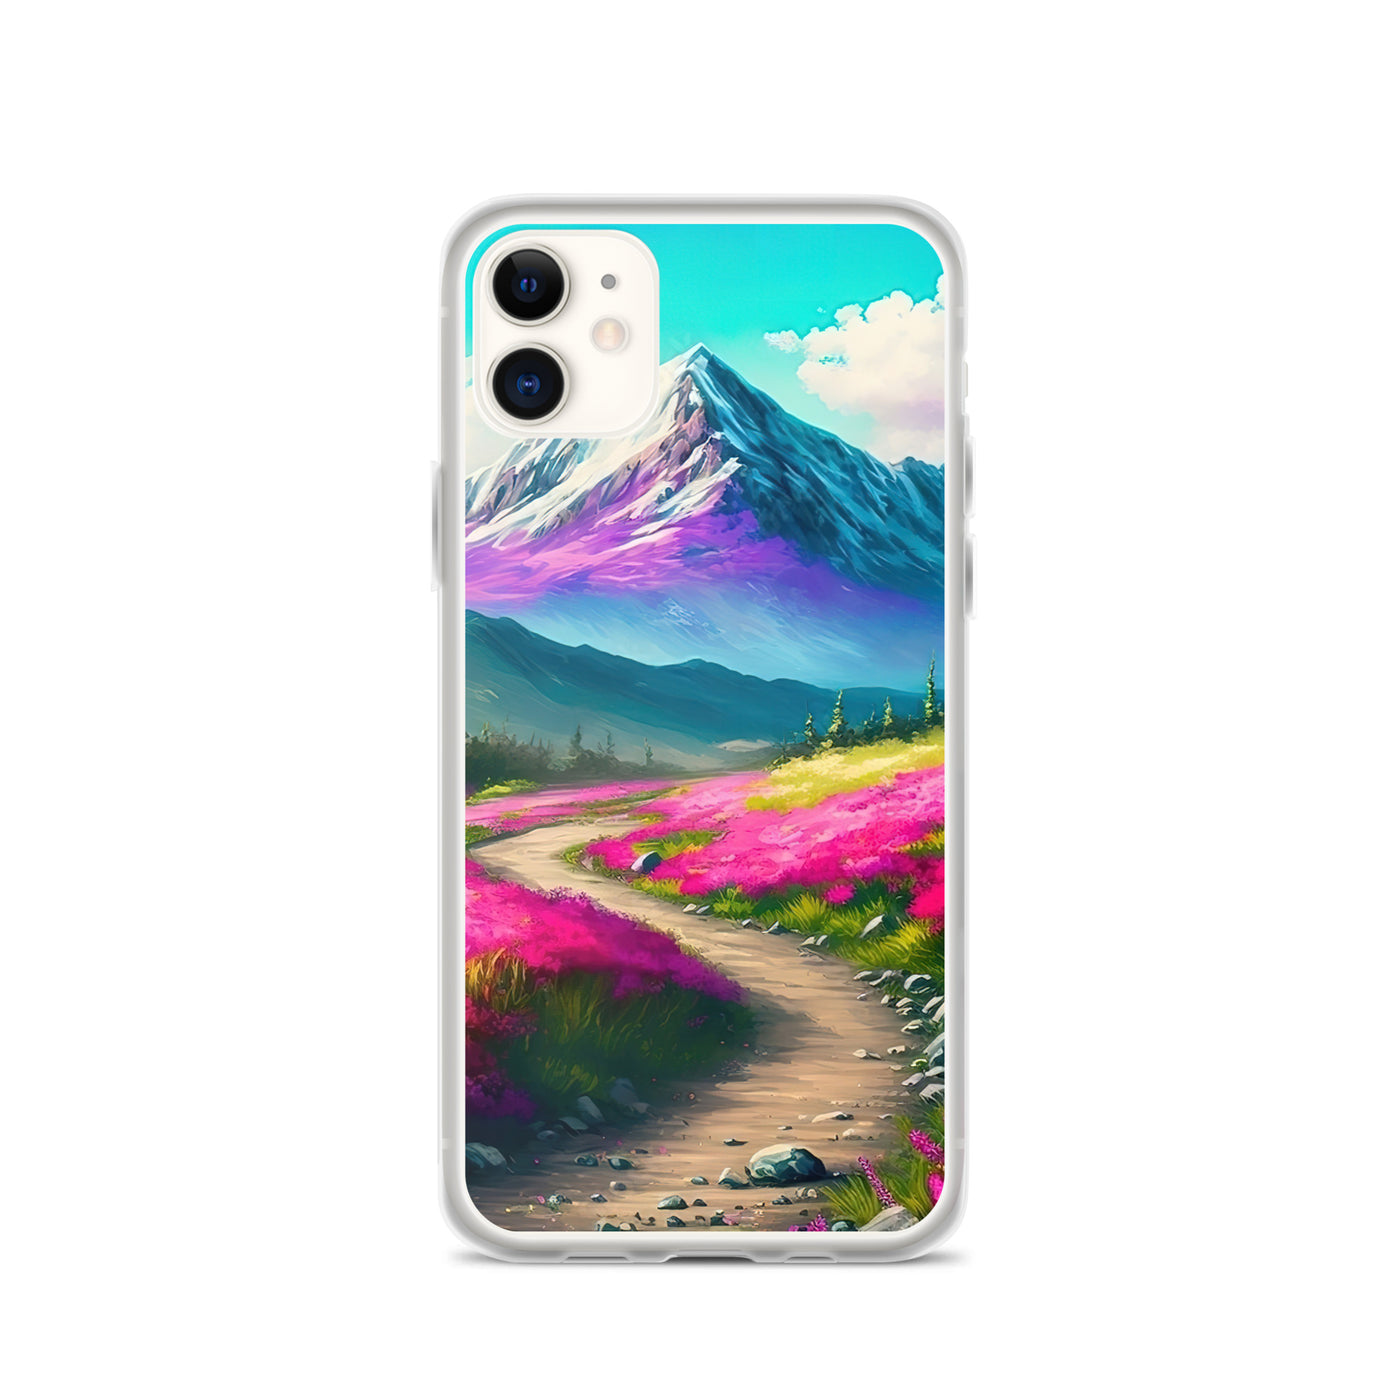 Berg, pinke Blumen und Wanderweg - Landschaftsmalerei - iPhone Schutzhülle (durchsichtig) berge xxx iPhone 11